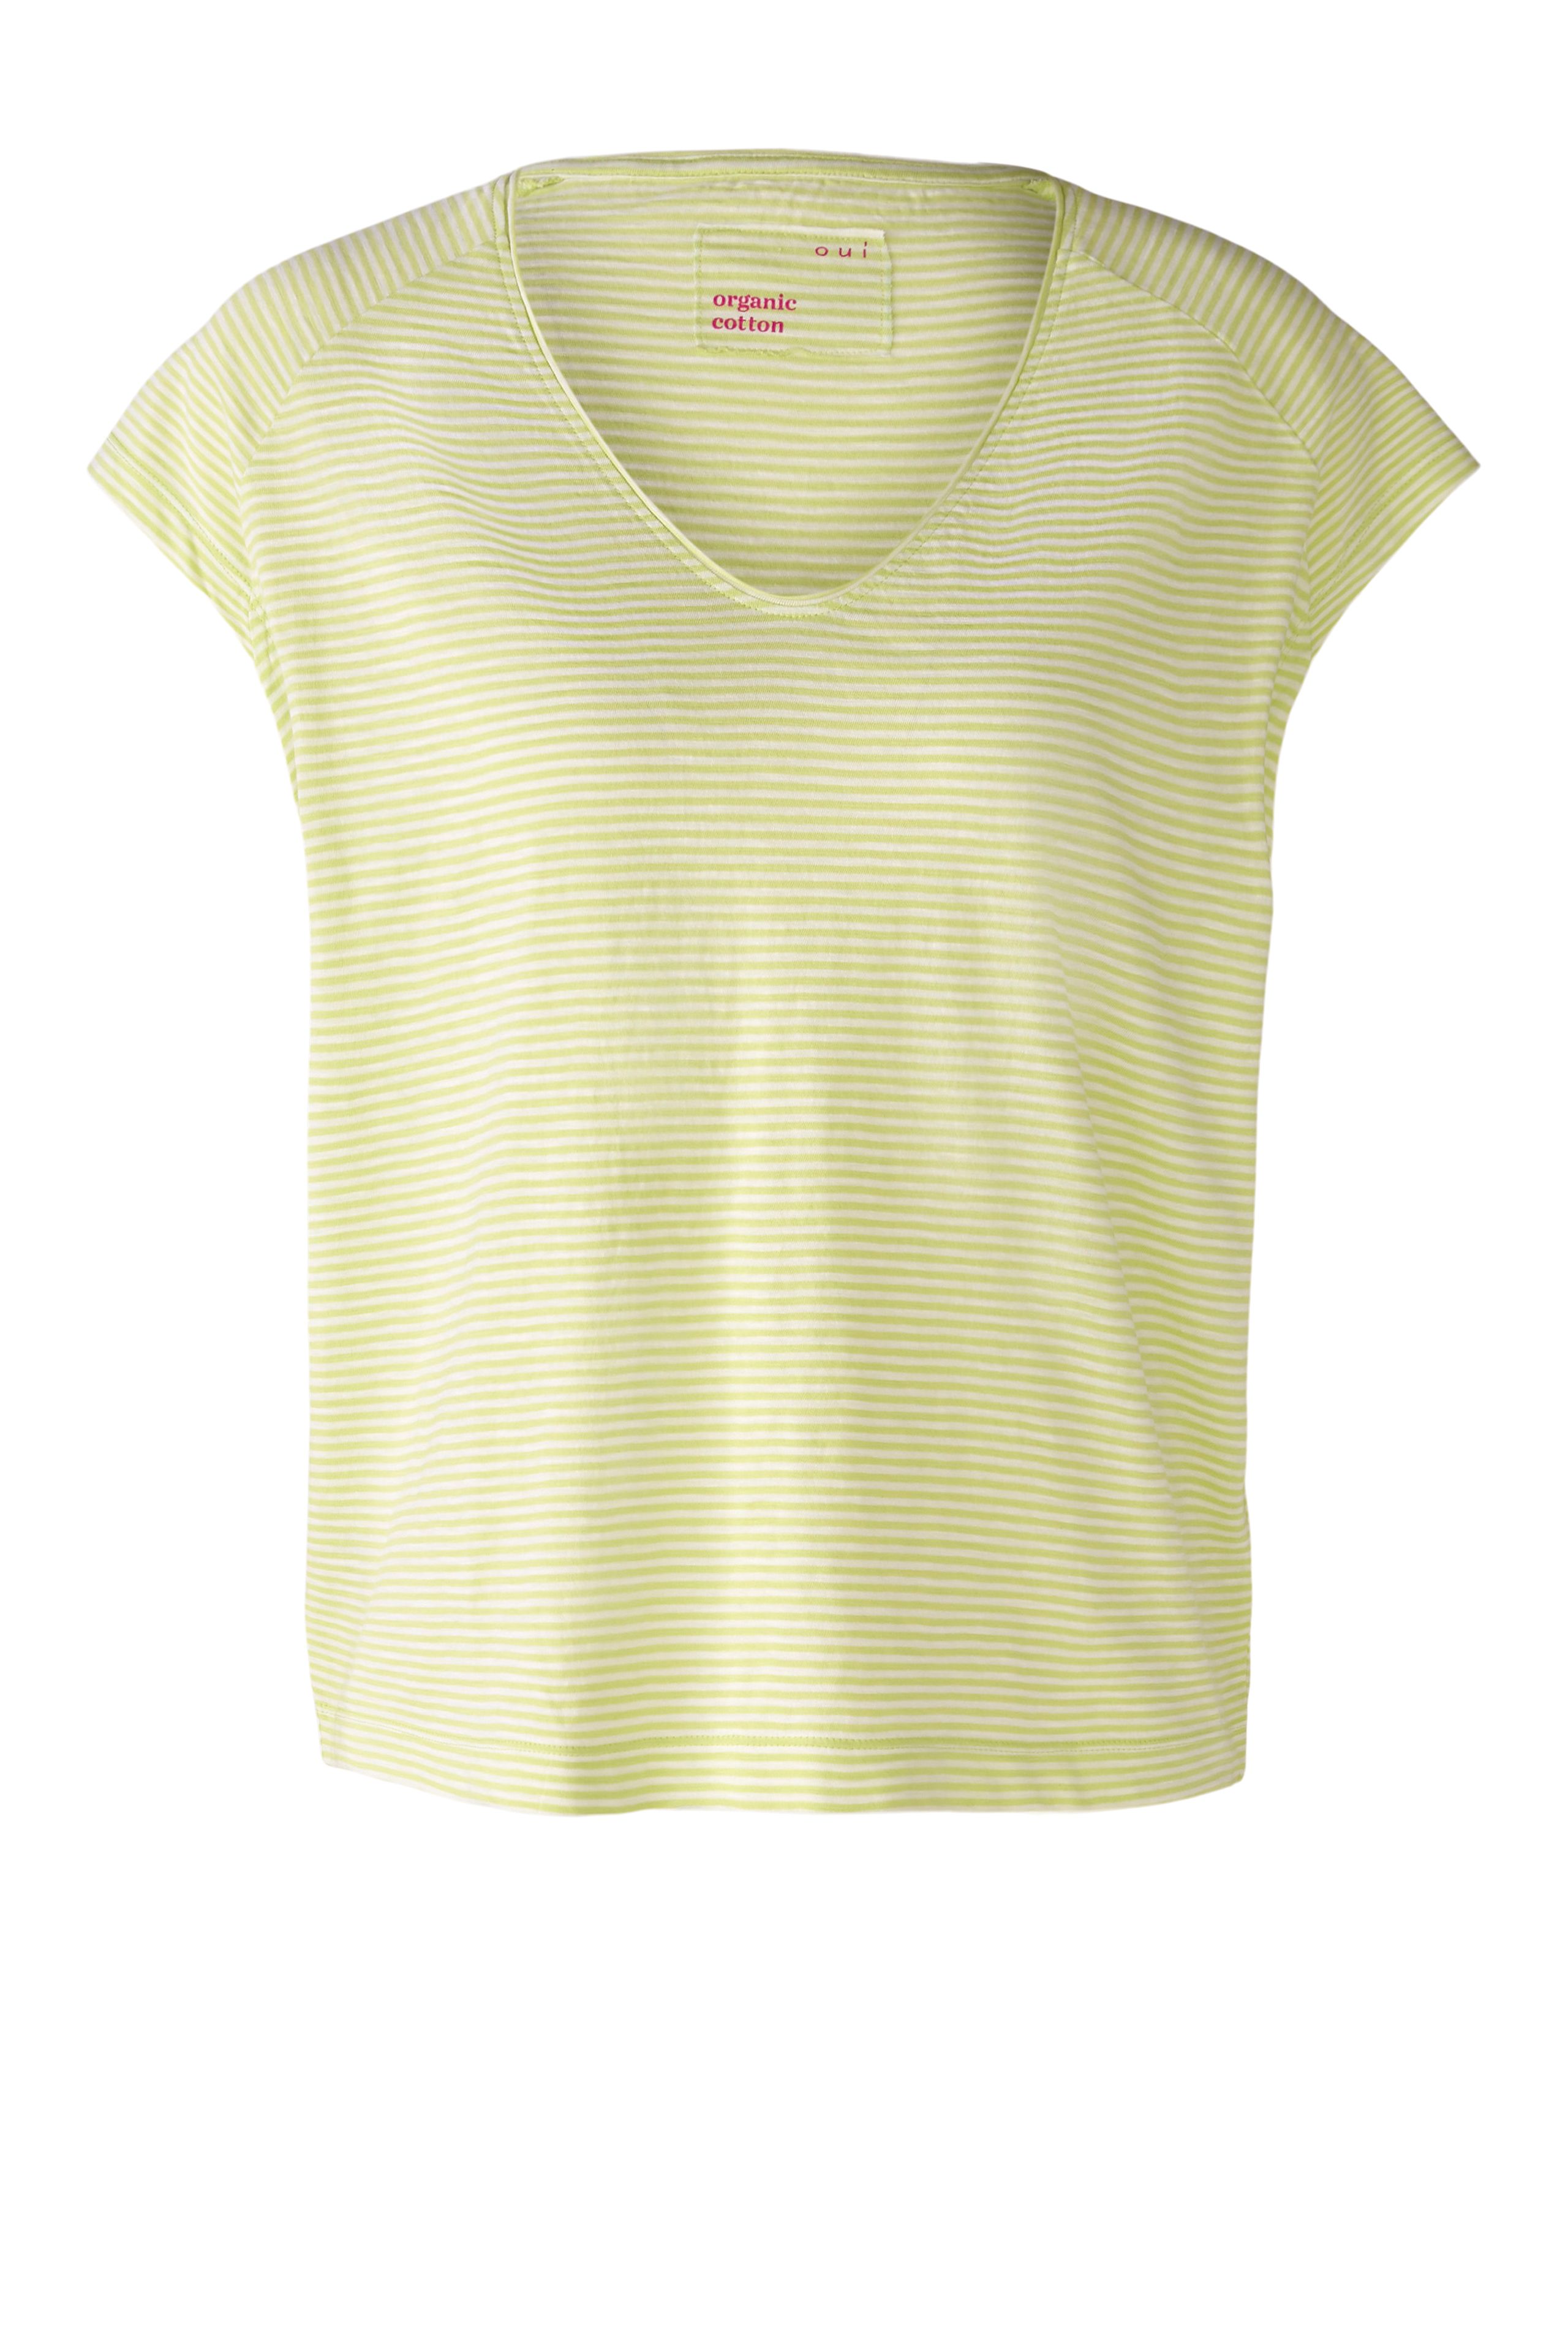 Oui Damen T-Shirt - yellow 40